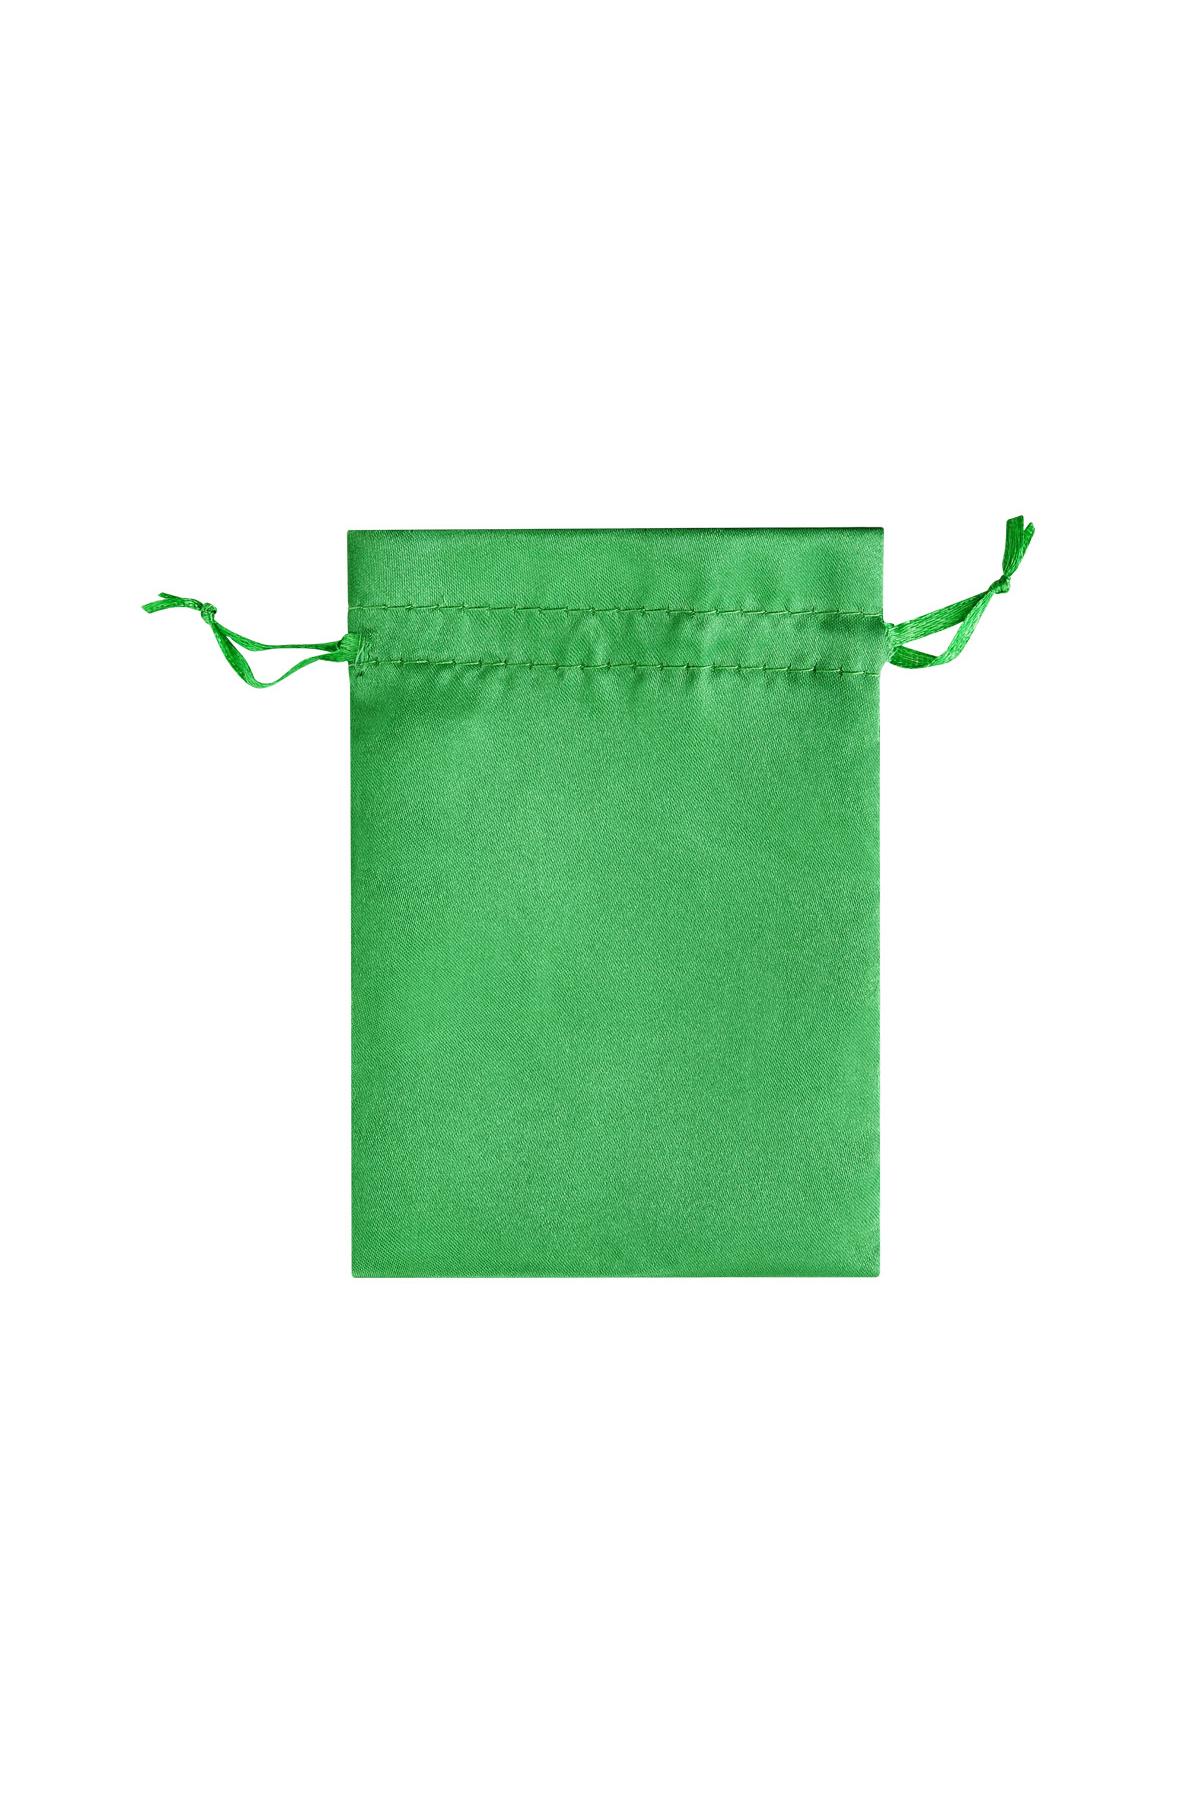 Sieradenzakjes satijn klein - groen Polyester h5 